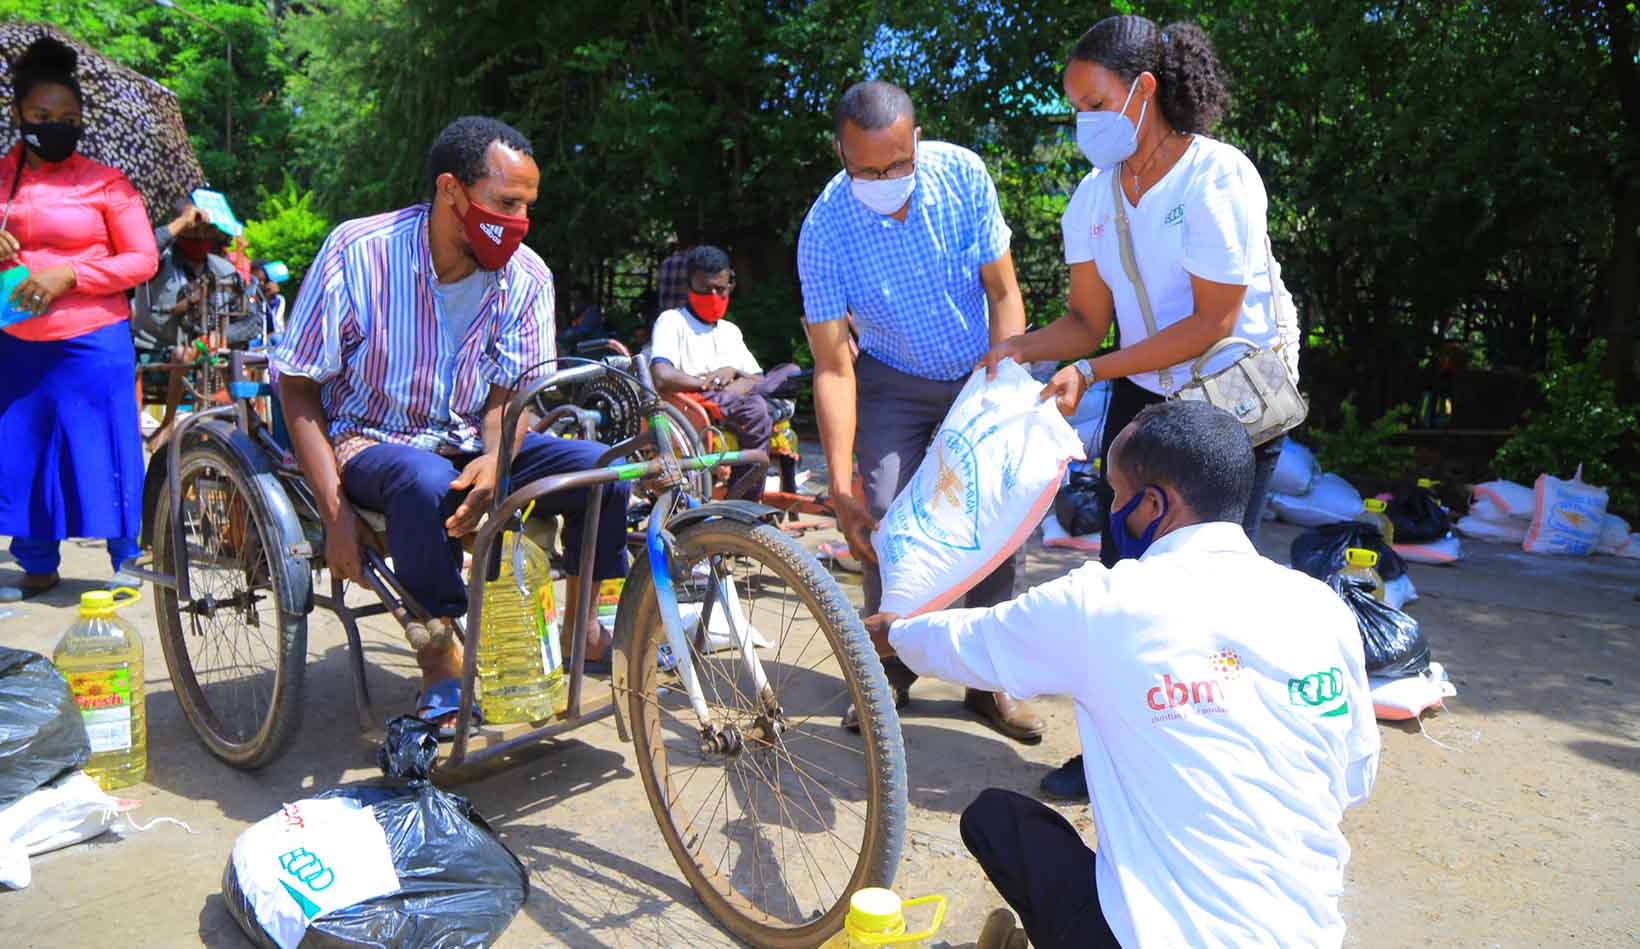 Ein Mann mit körperlicher Behinderung aus Äthiopien, der in einem Tricycle sitzt und eine Maske trägt, erhält von mehreren Personen Lebensmittel.